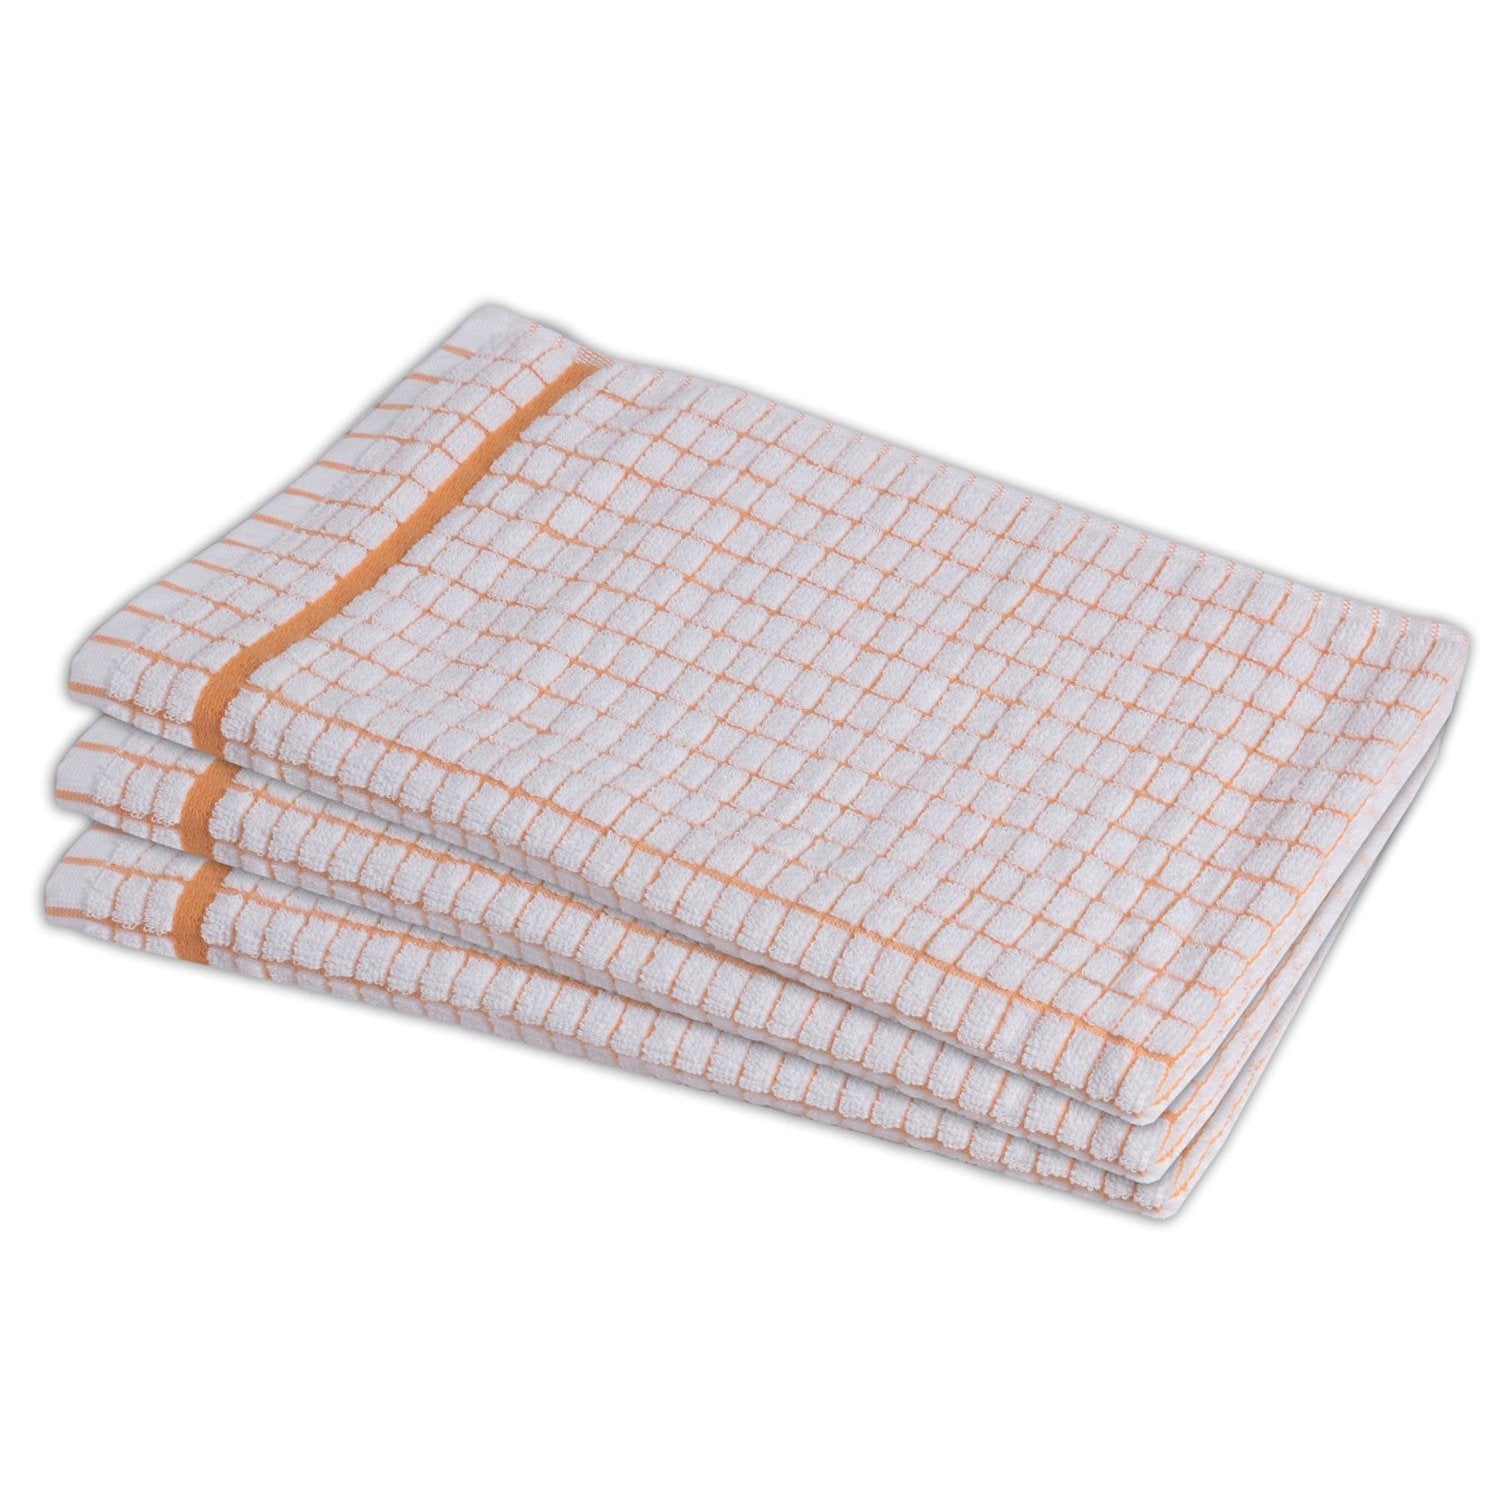 Linen Tea Towel Set, Linen Kitchen Towels Beige White Check